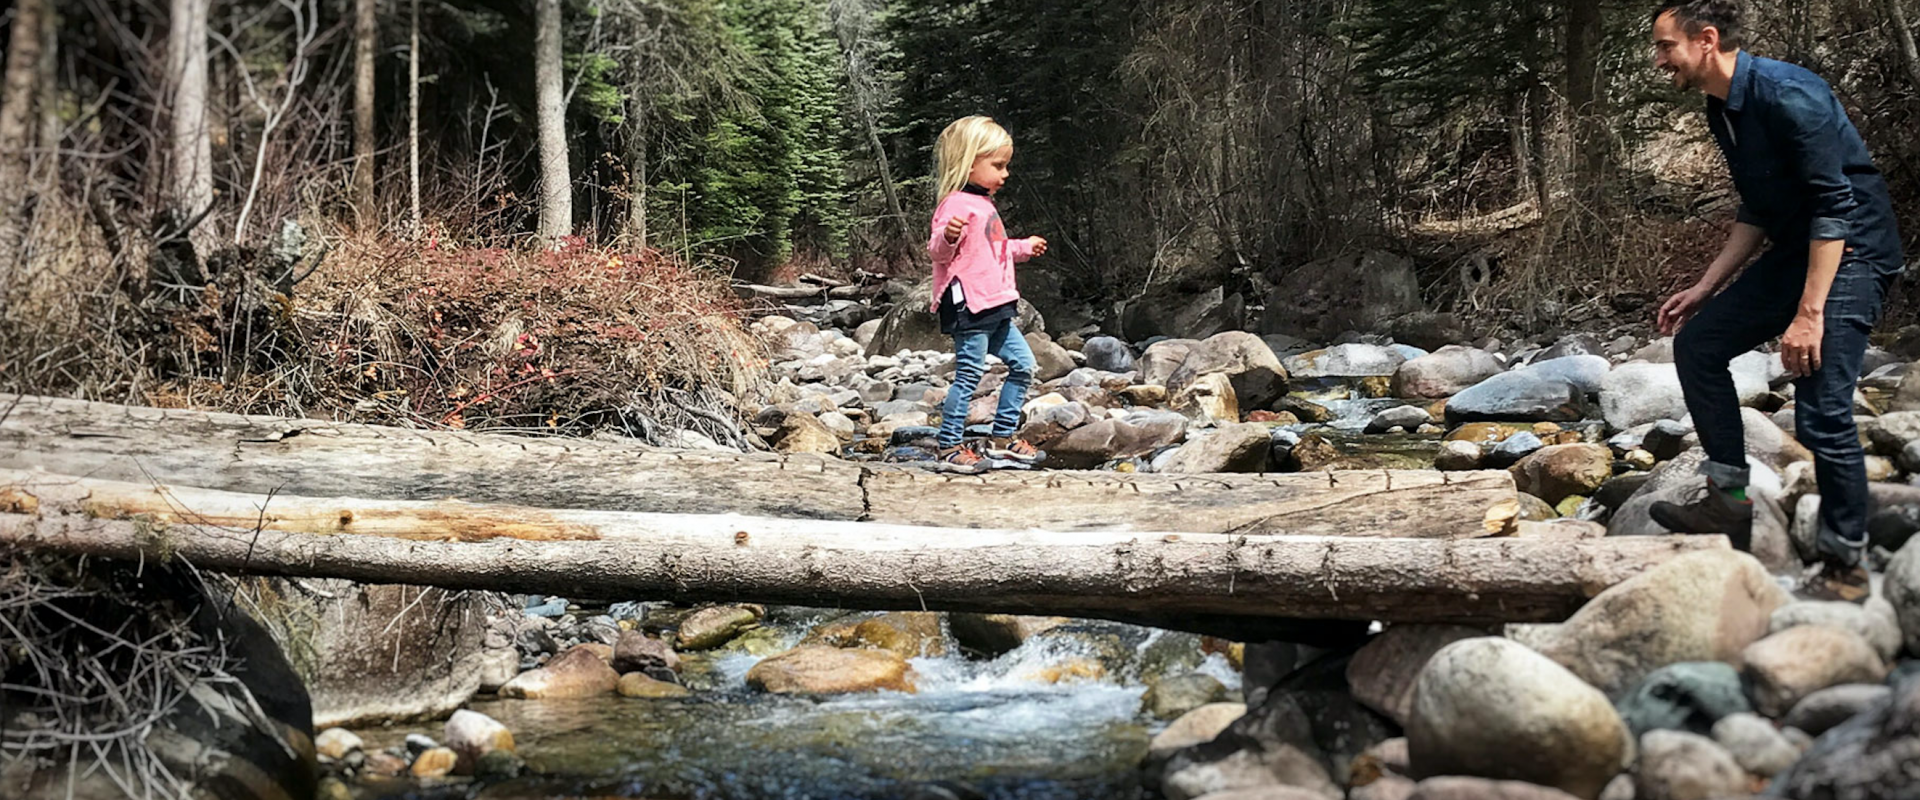 Détente et loisirs : petite fille avec un pull rose qui traverse un pont de bois pour rejoindre son papa. arrière-plan forêt avec rivière et rocher